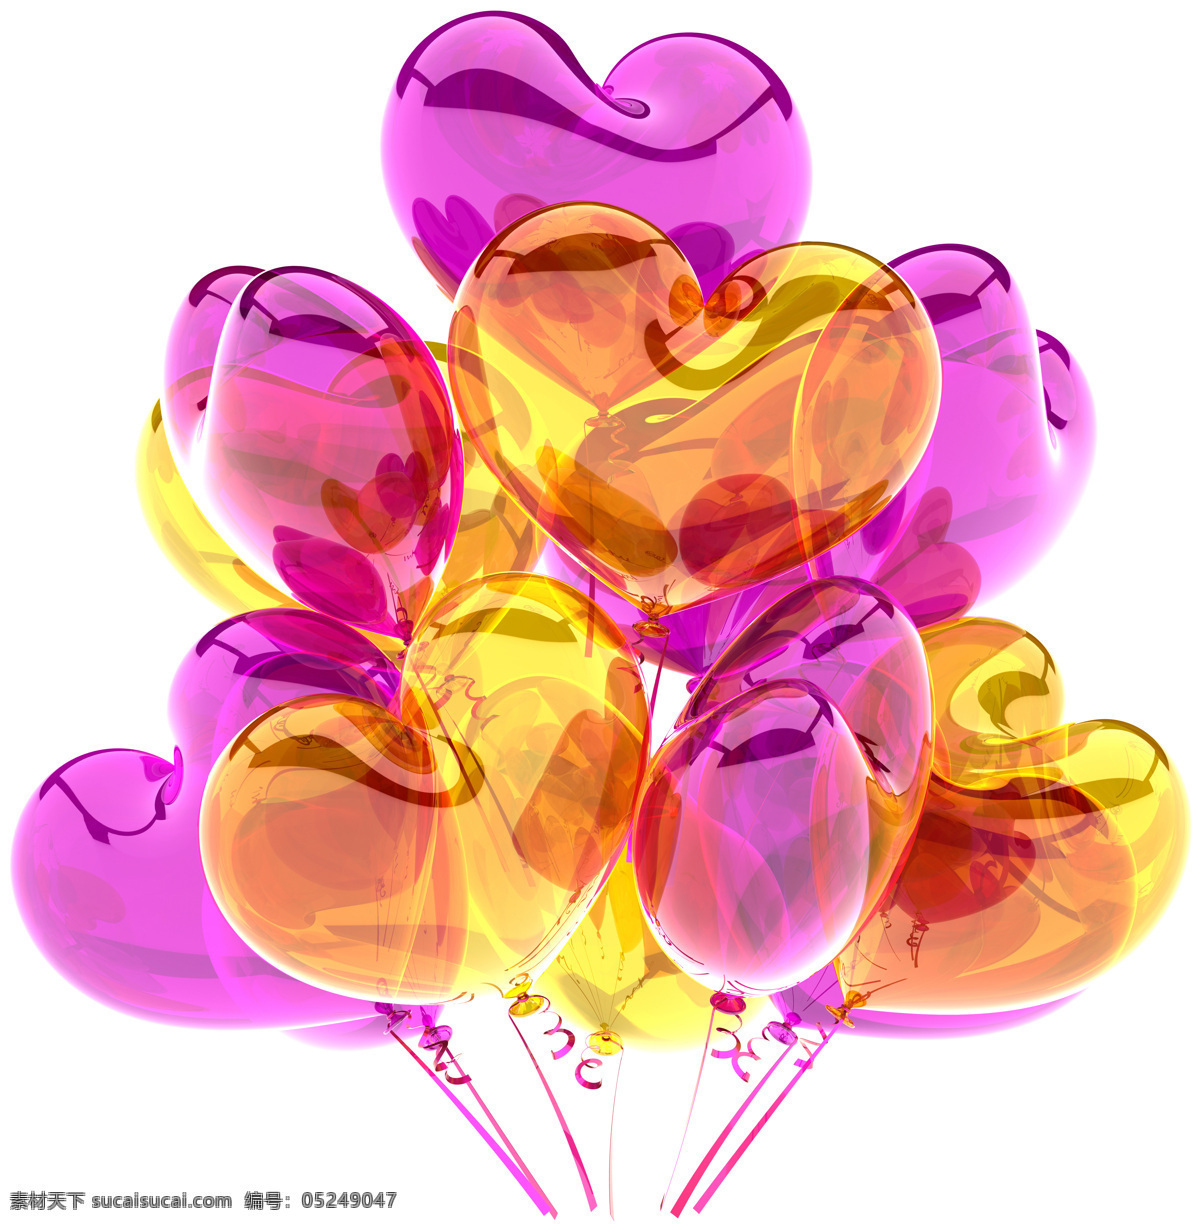 彩色 心形 气球 彩色气球 彩球 节日气球 节日彩球 节日素材 节日庆祝 3d设计 心形气球 其他类别 生活百科